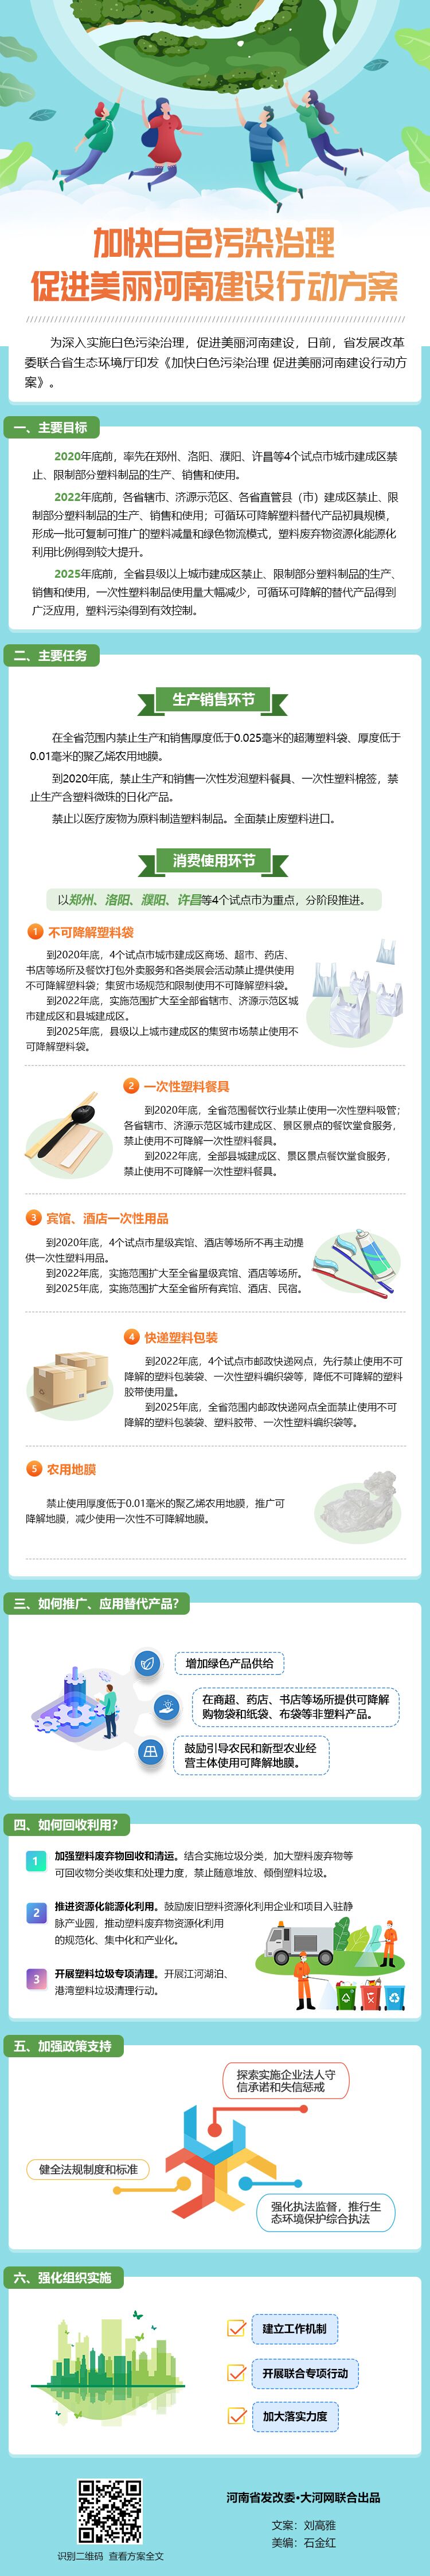 河南禁用一次性塑料制品